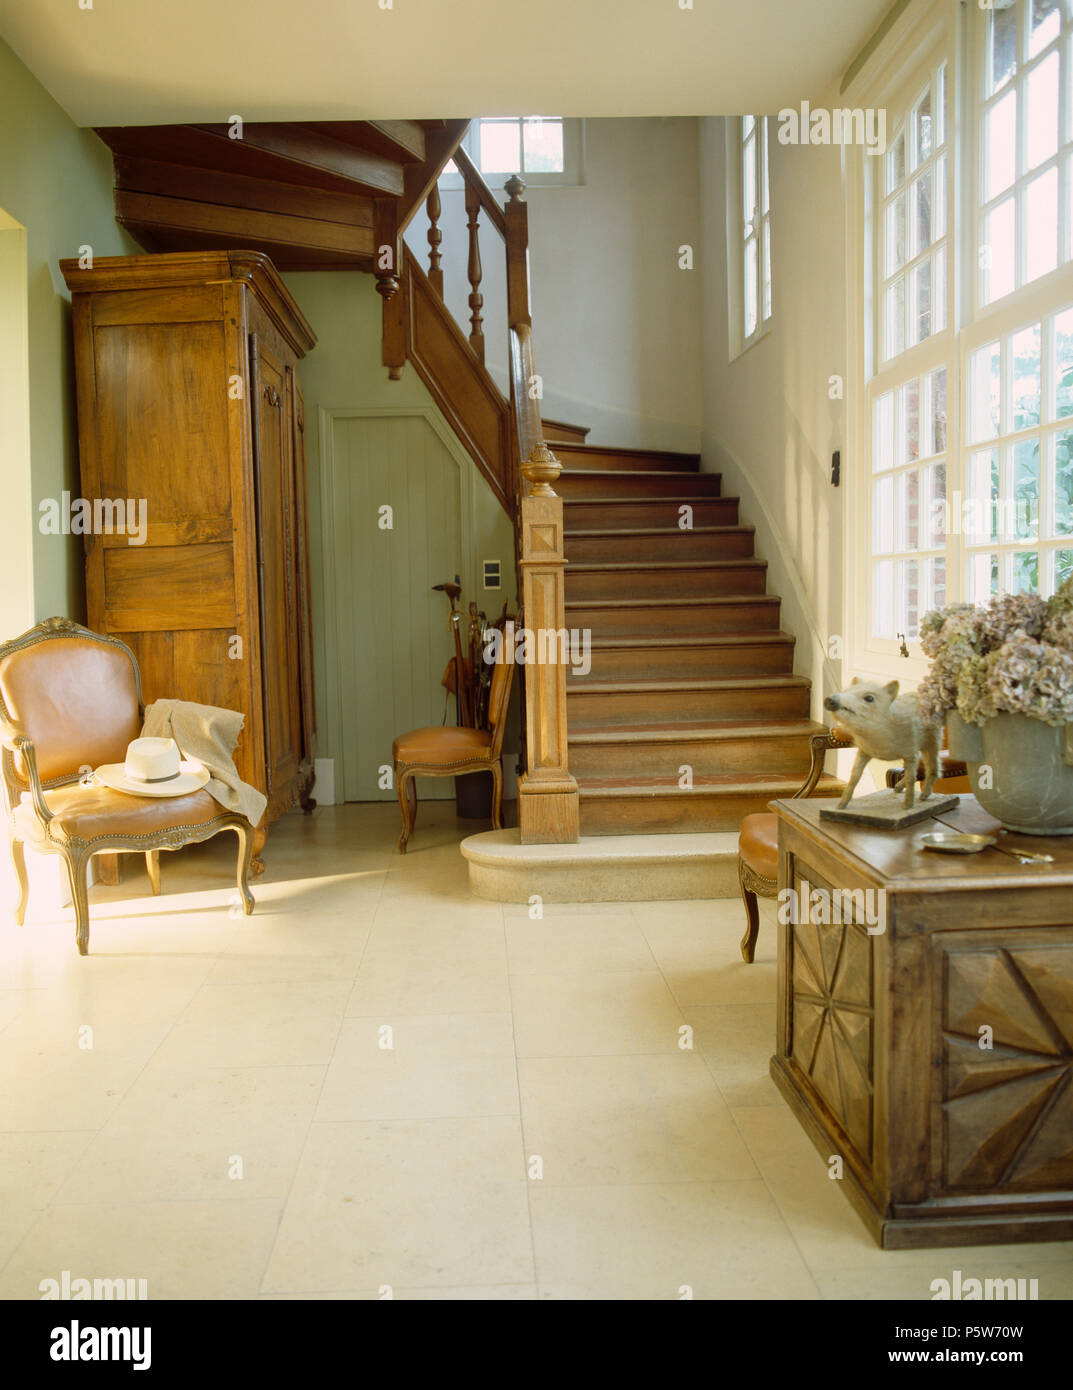 Sedia antica e mobilia di legno scolpito petto nel paese francese sala con pavimento piastrellato in pietra e la scalinata in legno di quercia Foto Stock